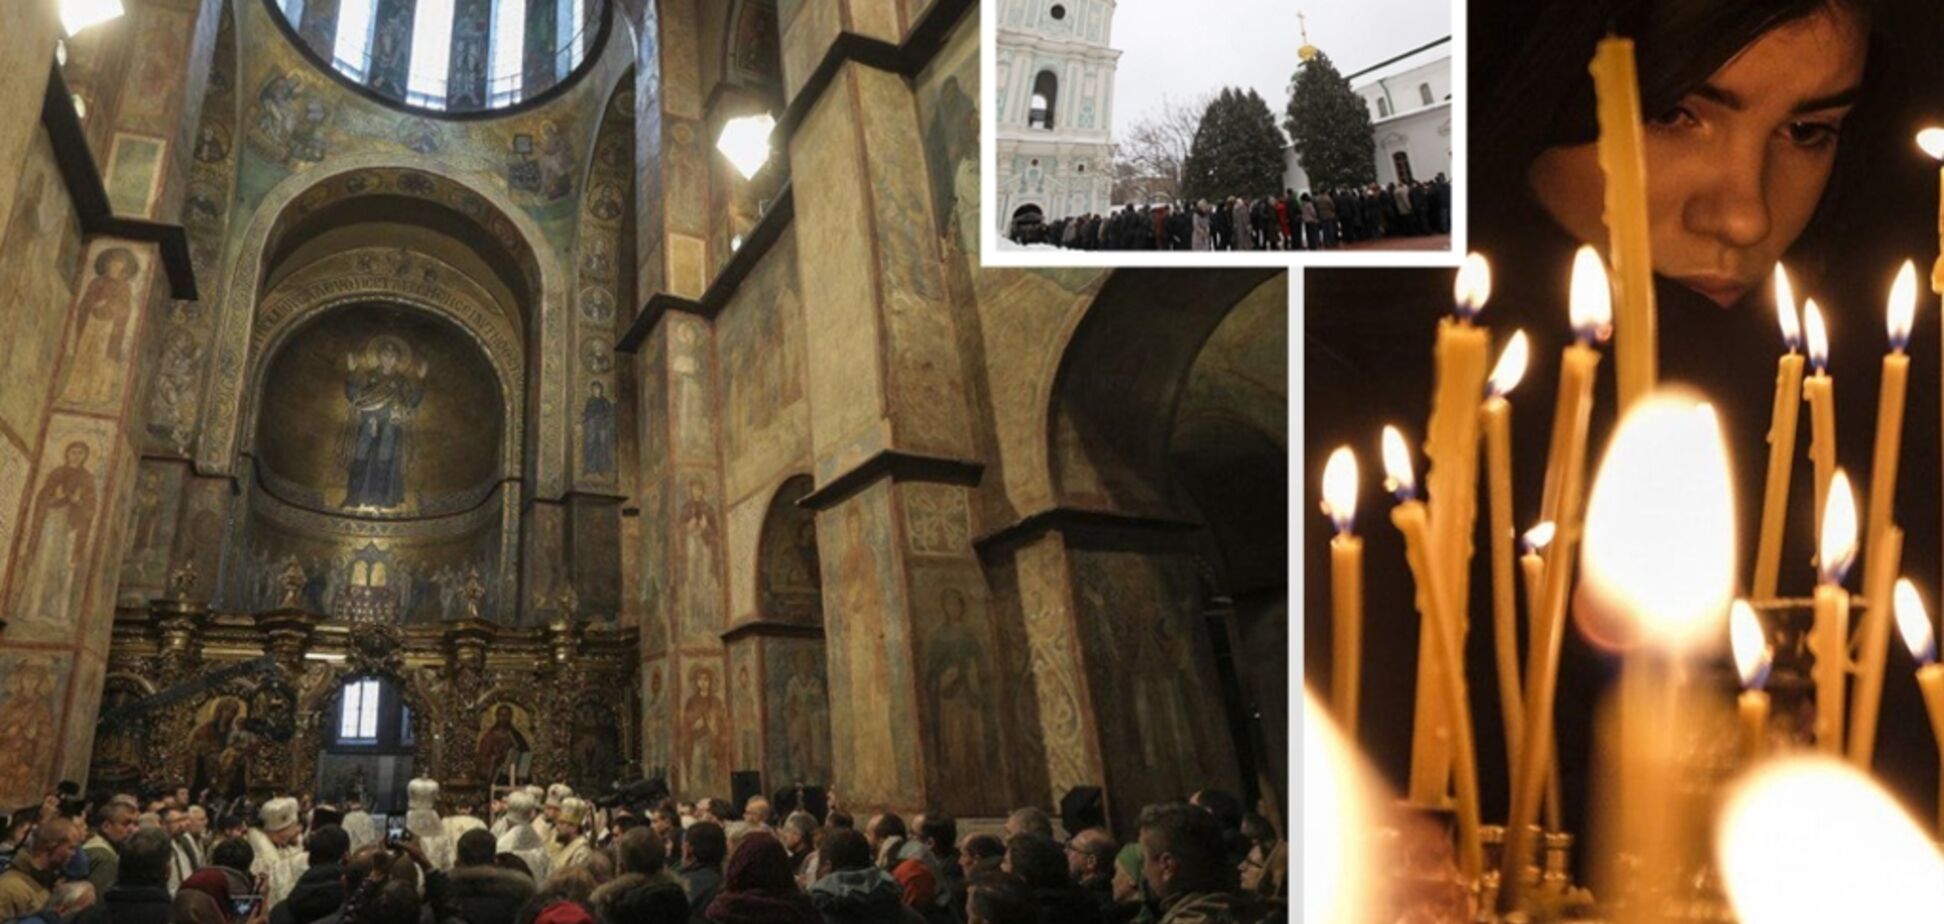 Прийнятий революційний церковний закон: чого чекати українцям